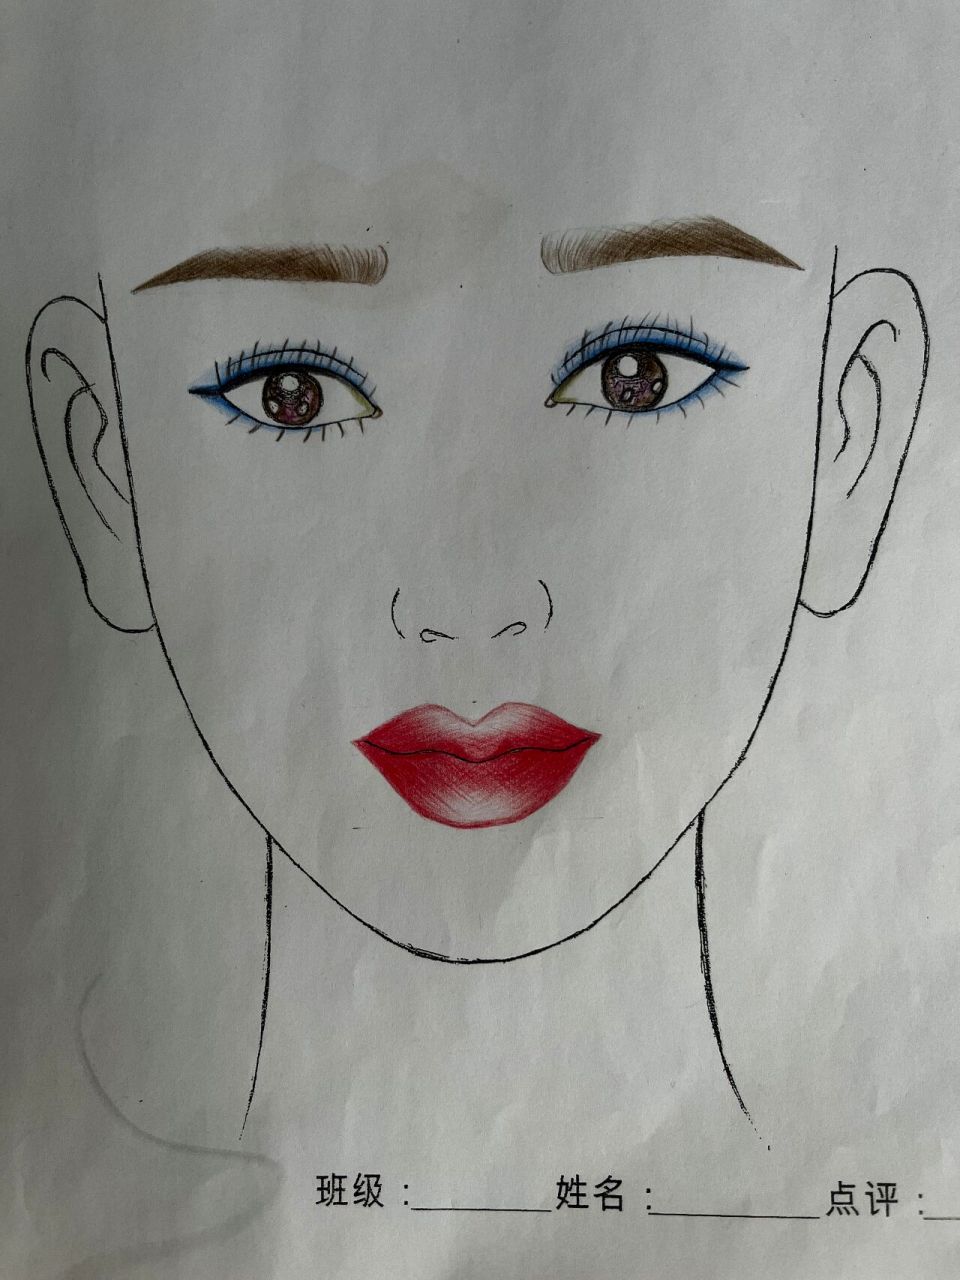 化妆素描——美人图 在学校学习化妆,素描的就最后一节课就是化美人图